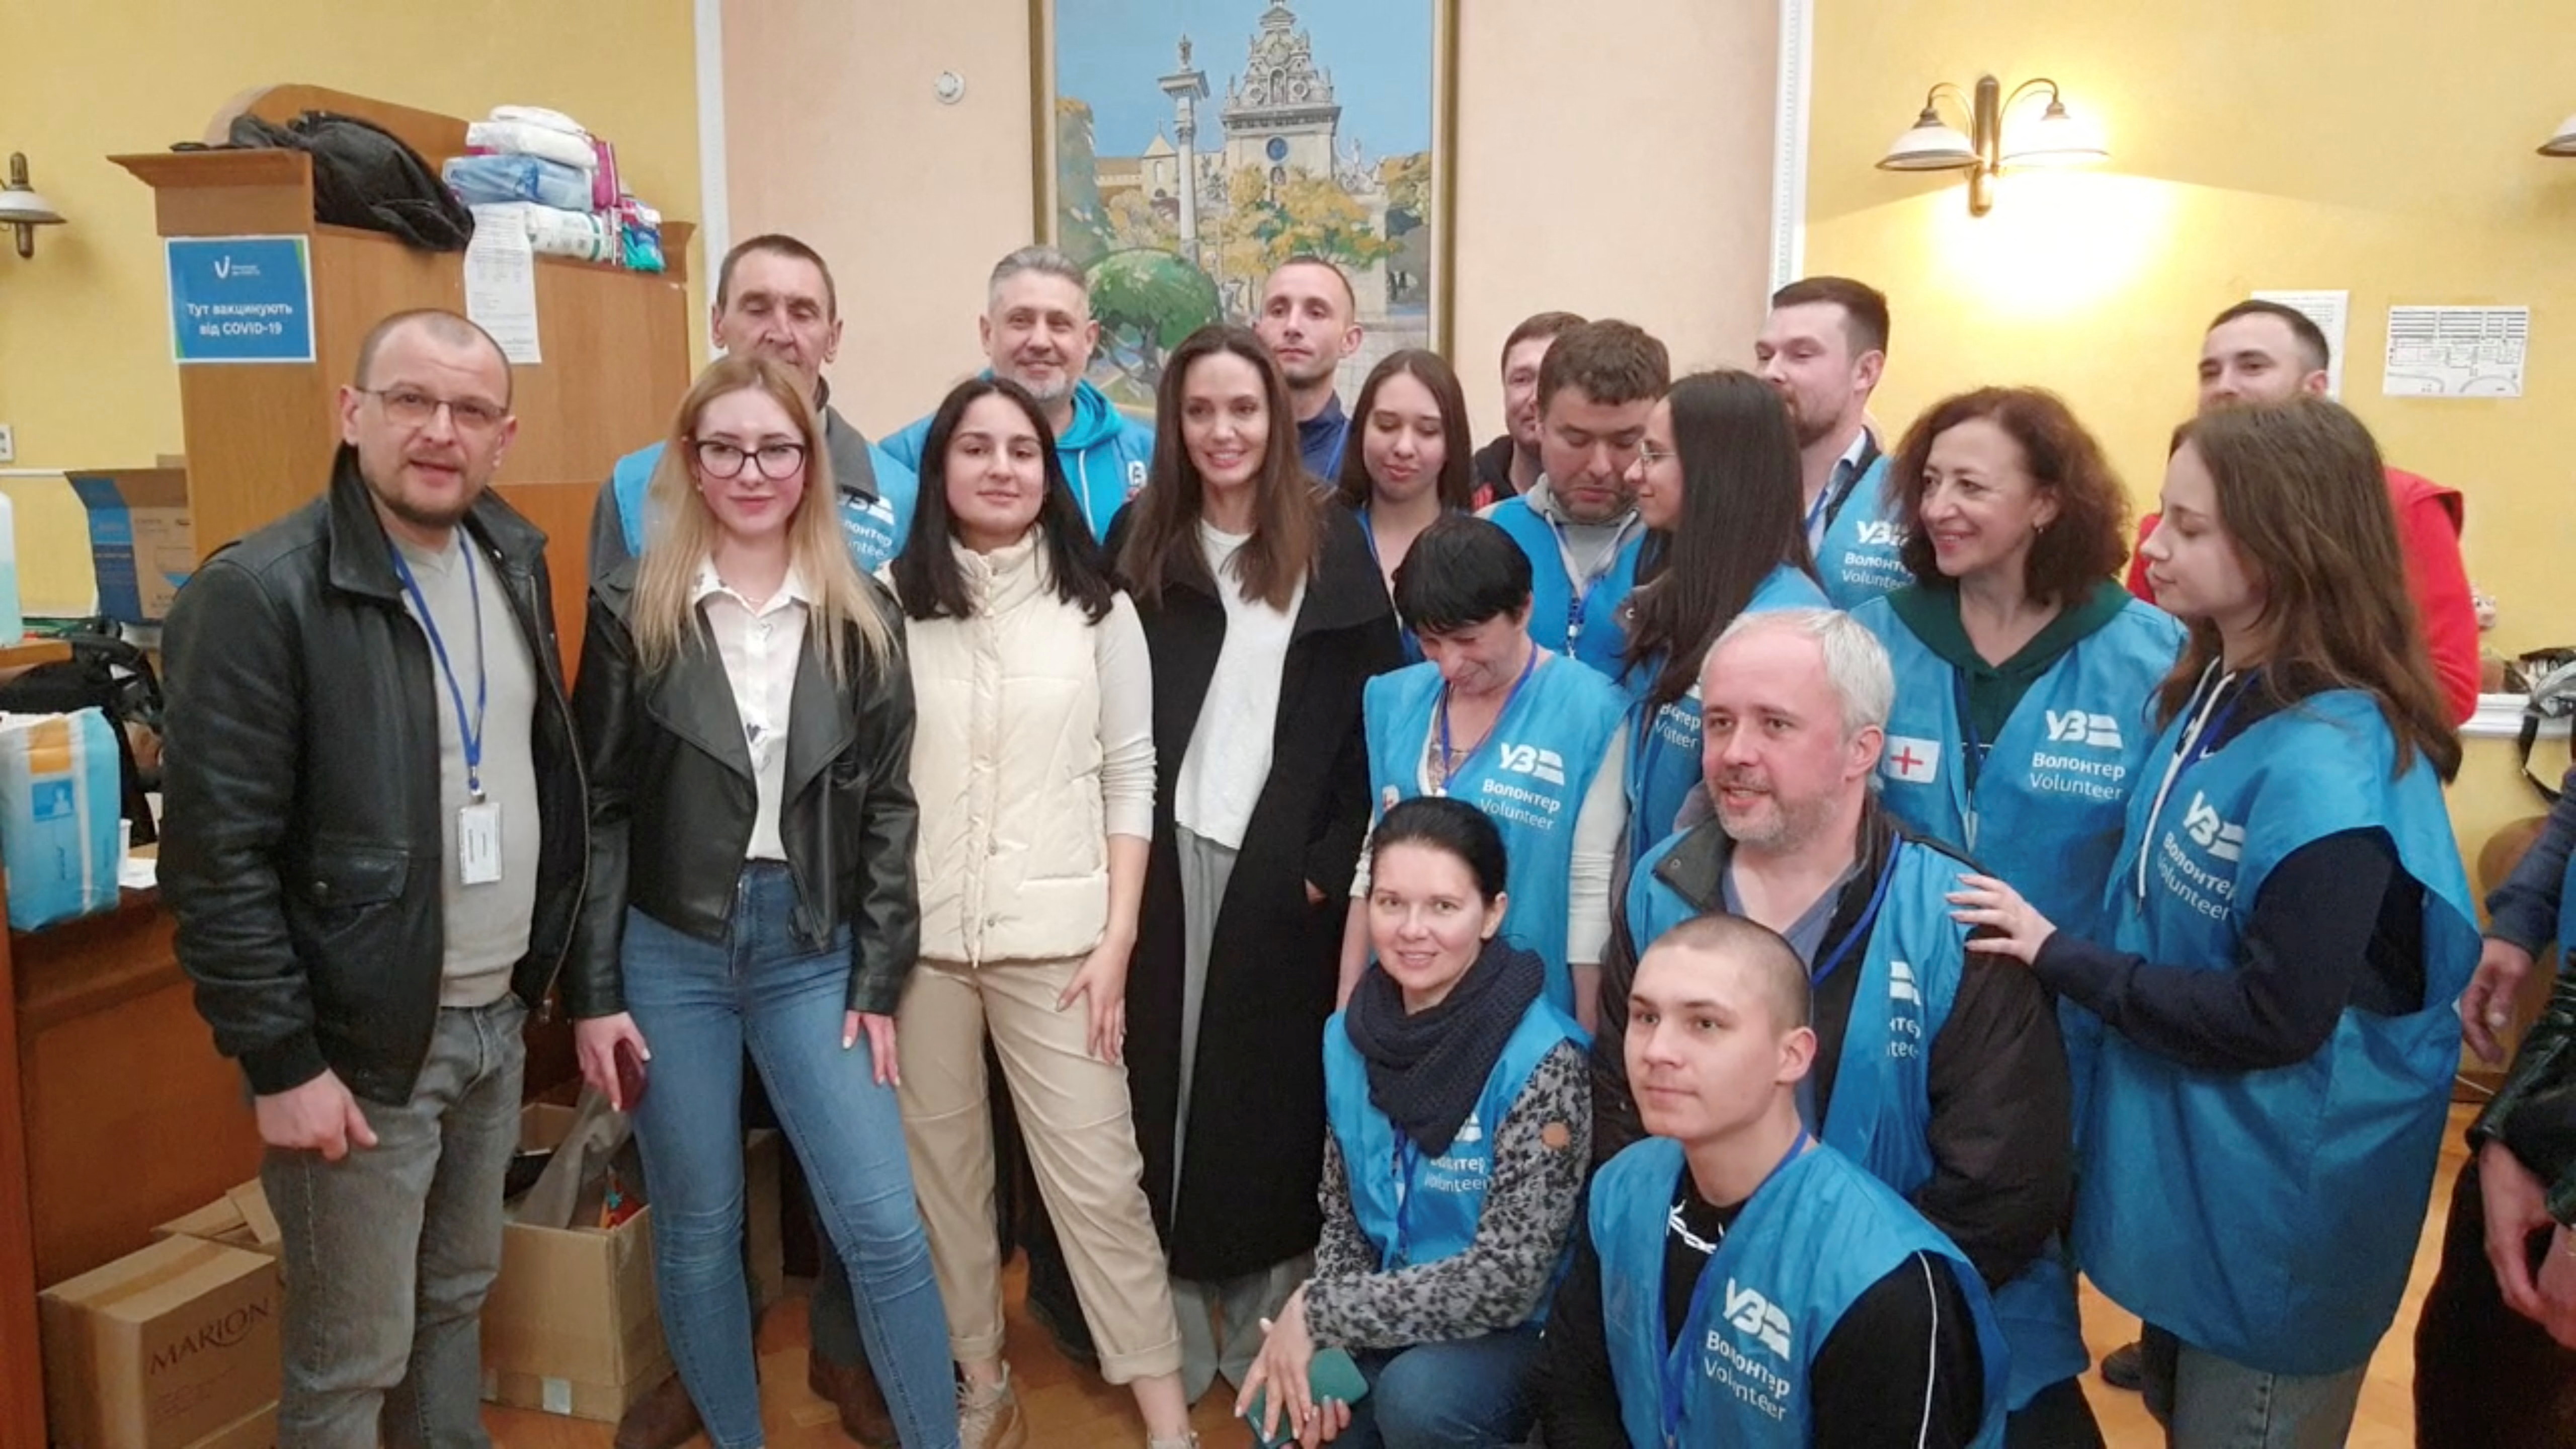 Jolie posa junto a grupo con voluntarios mientras visita la principal estación de tren de Lviv este 30 de abril de 2022 (REUTERS)